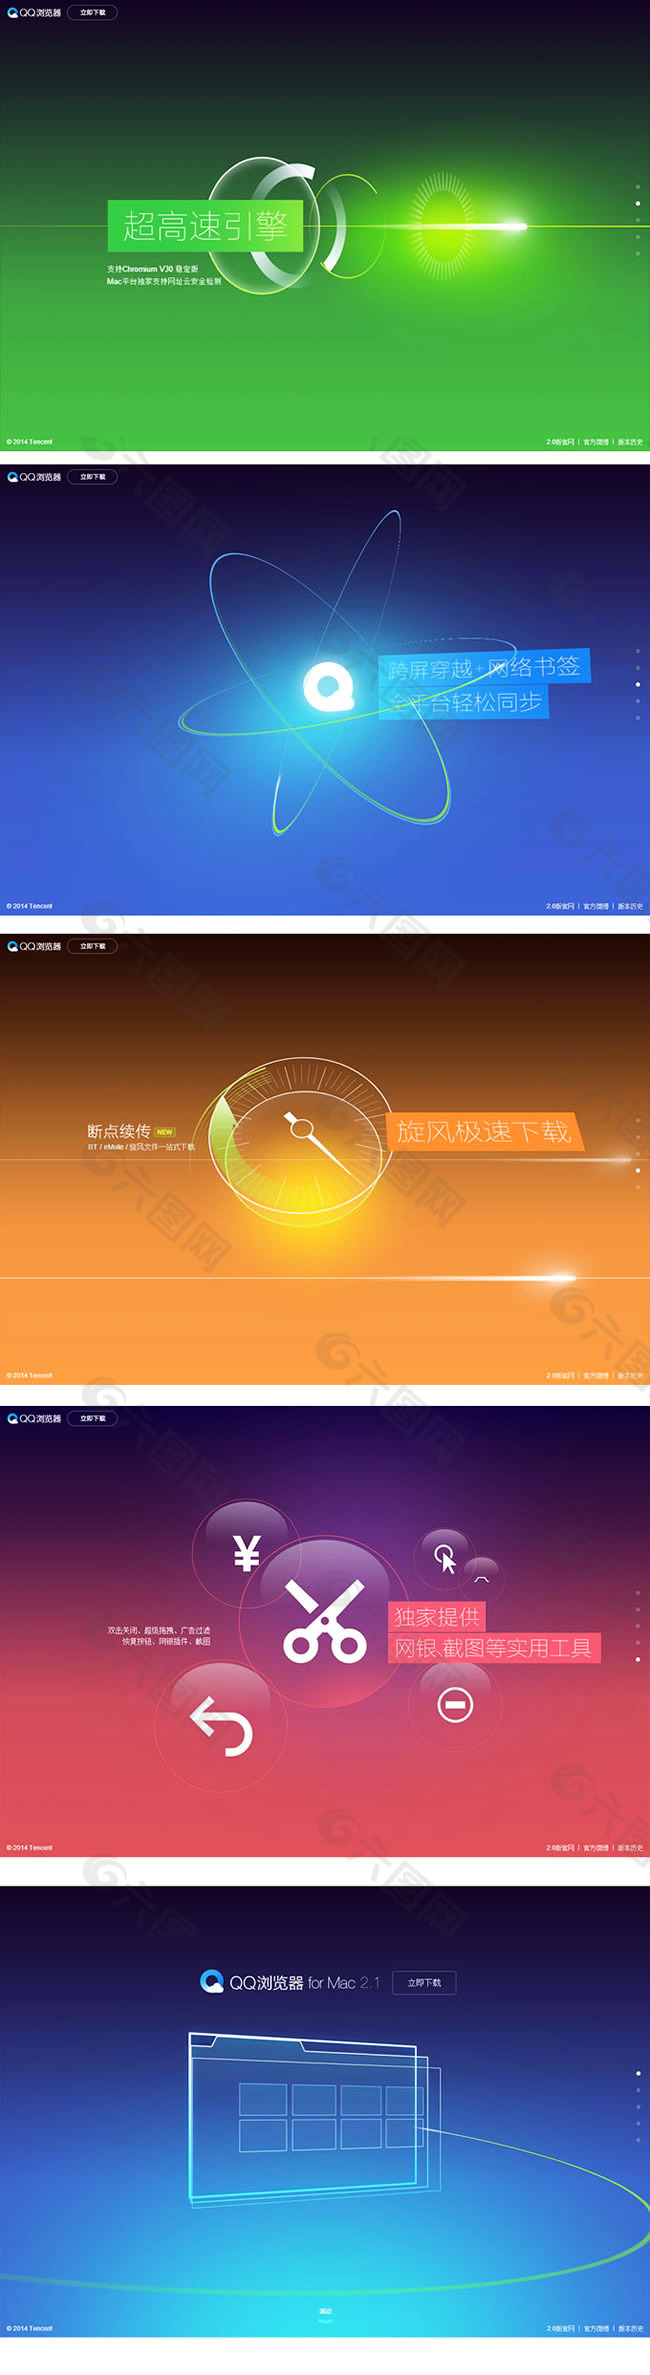 QQ浏览器背景模板psd素材